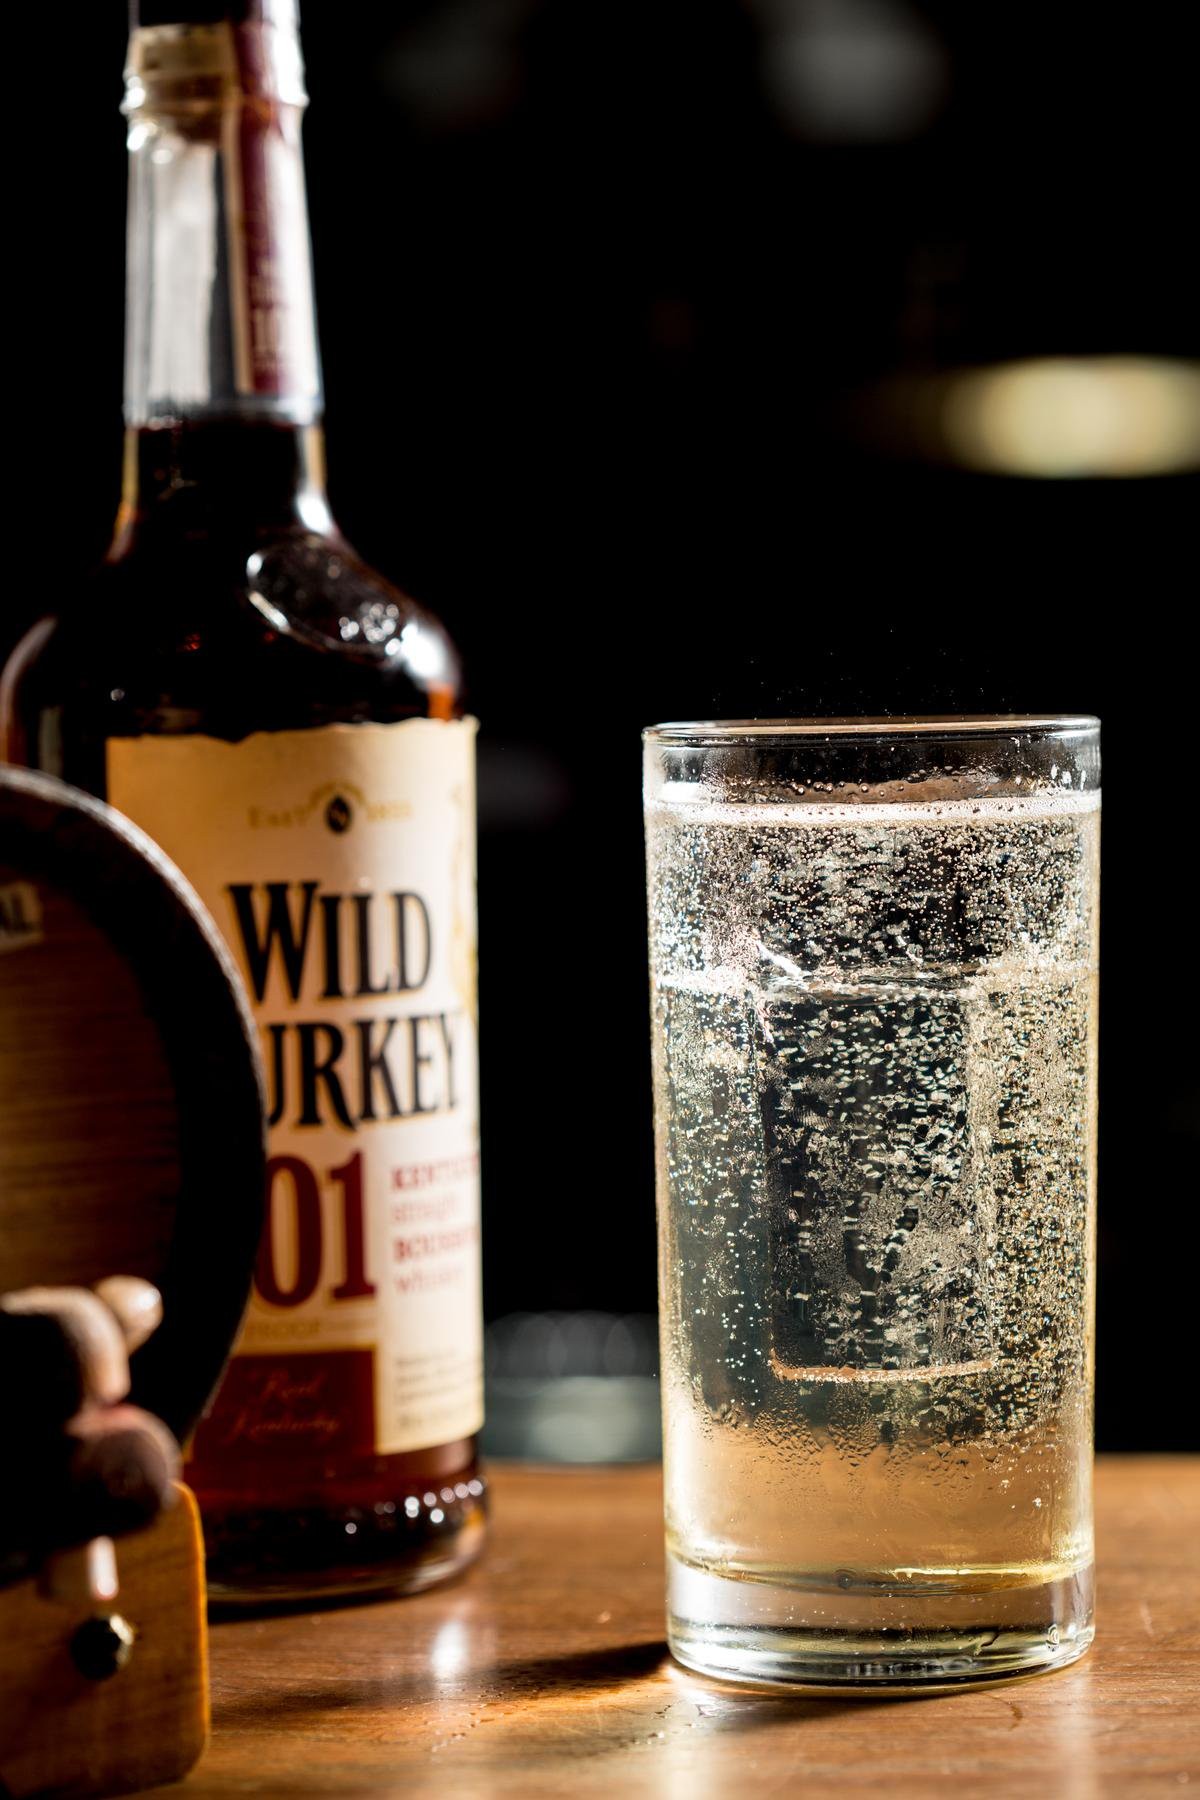 經典調酒High Ball，選用歷史悠久的Wild Turkey波本更添硬派氣息。